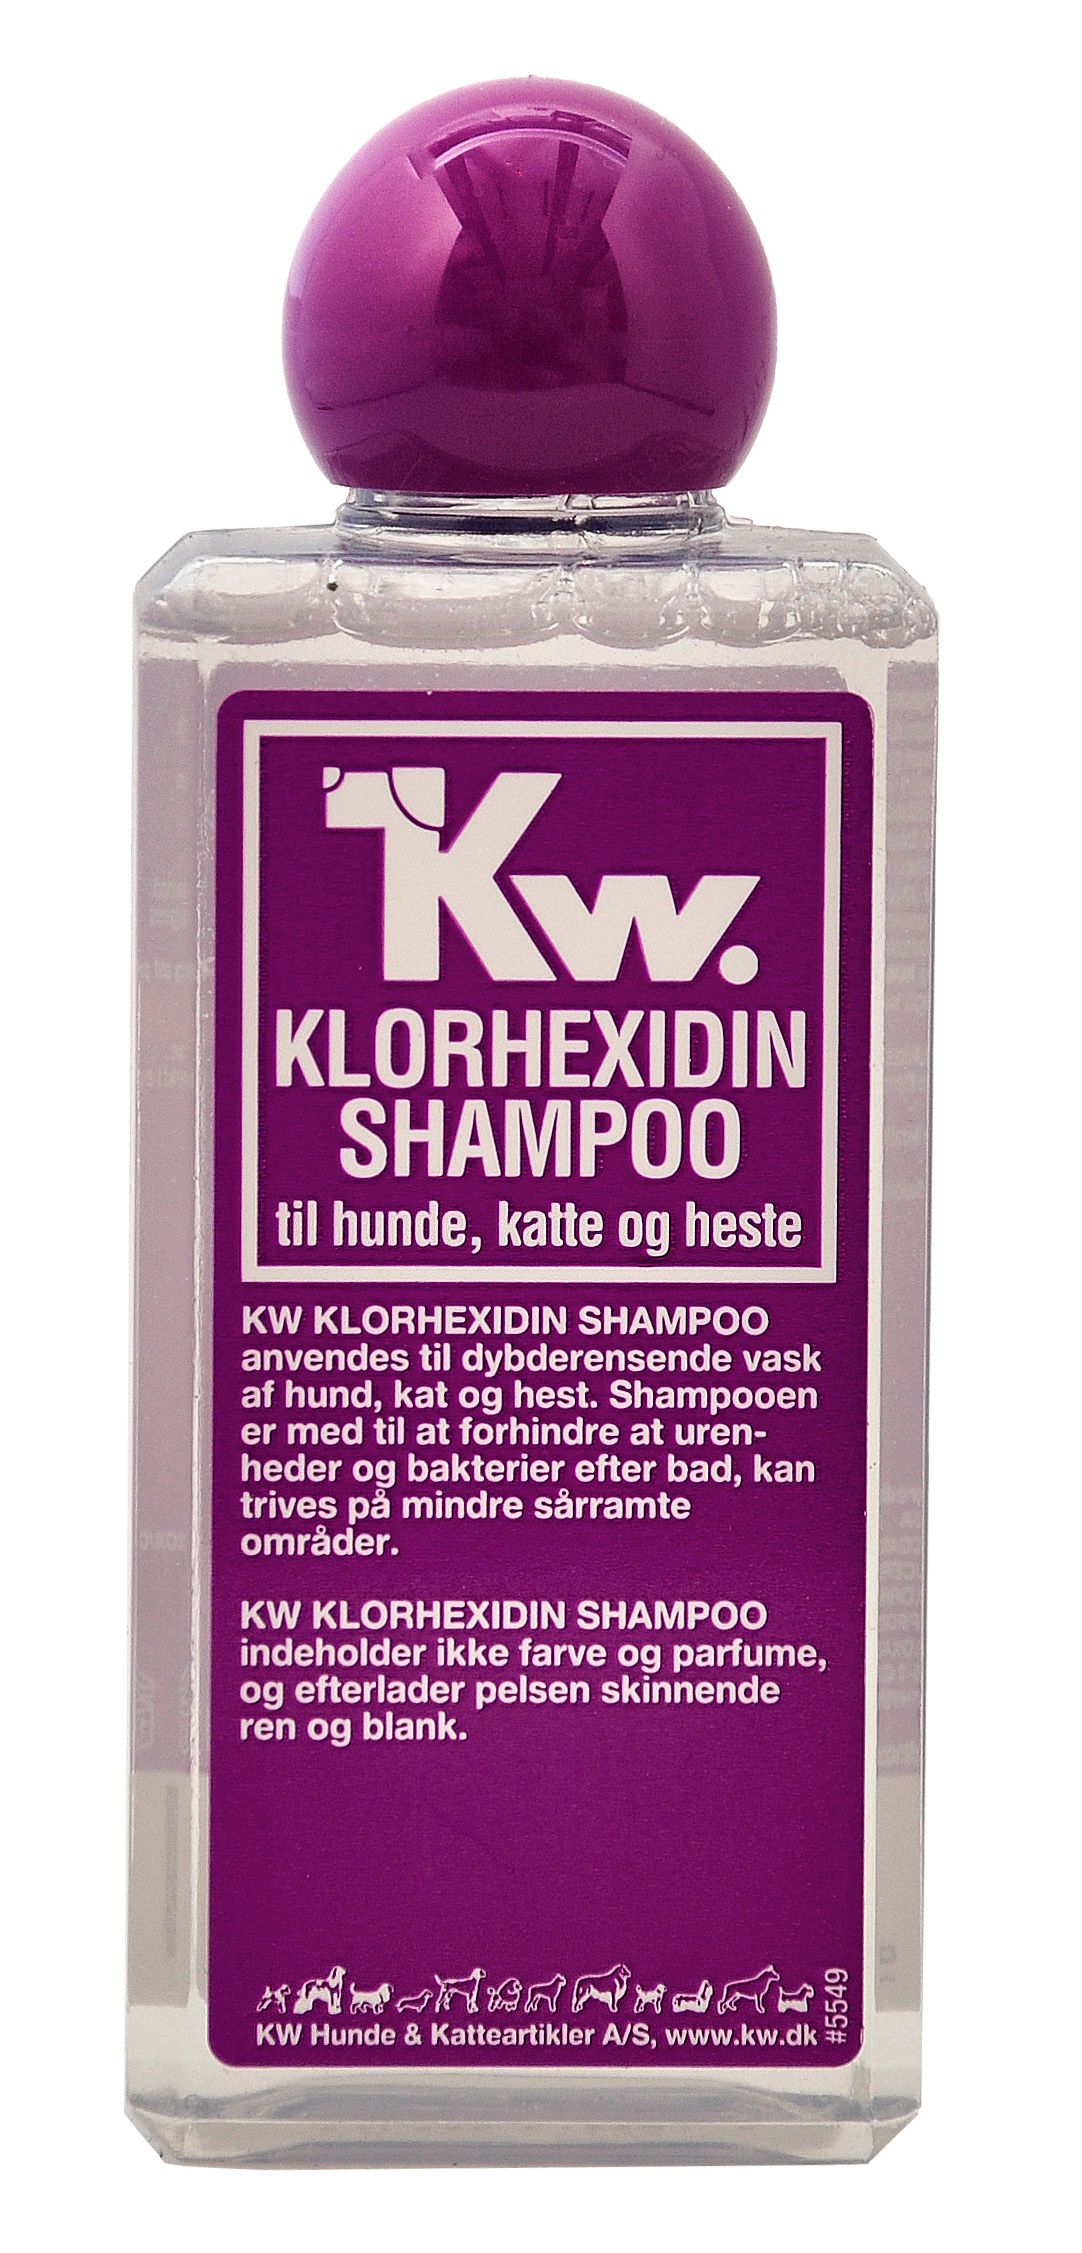 KW Shampoo til vask.